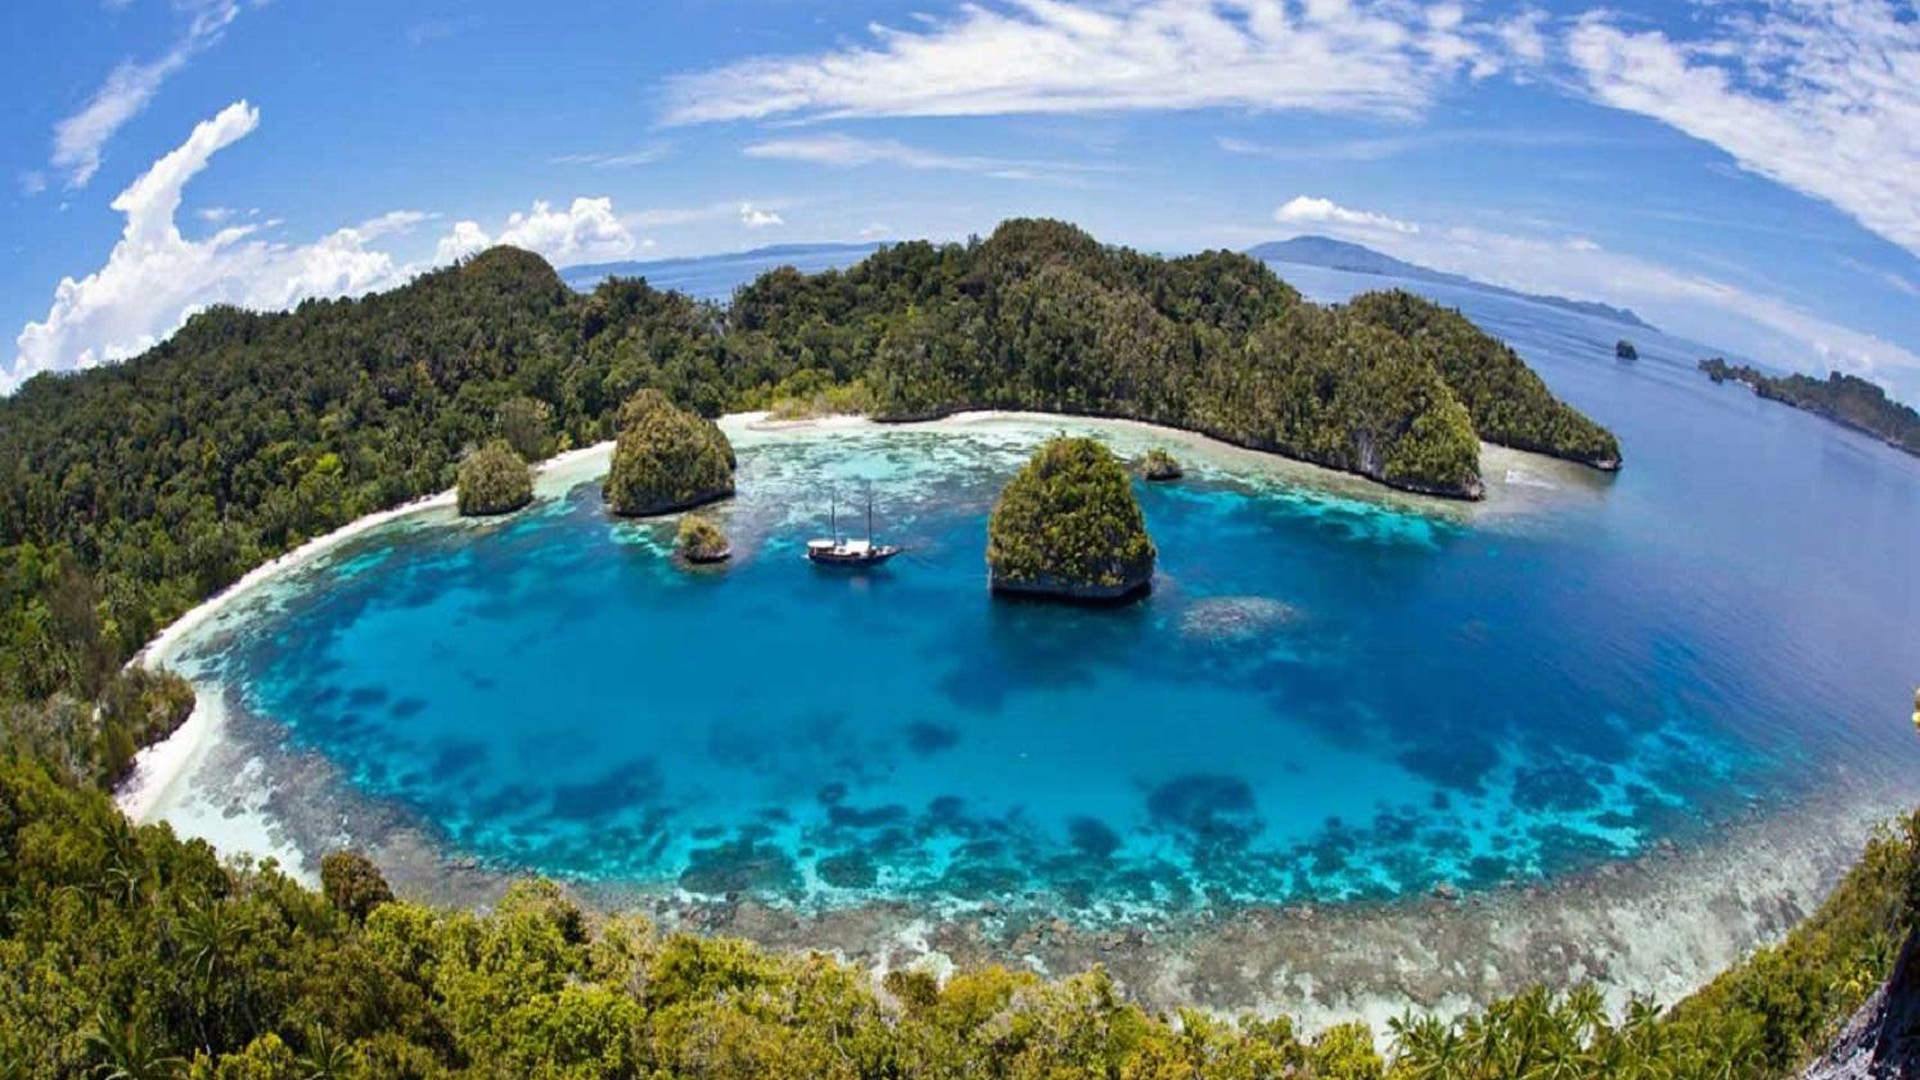 Raja ampat tropics islands indonesia desktop wallpaper hd